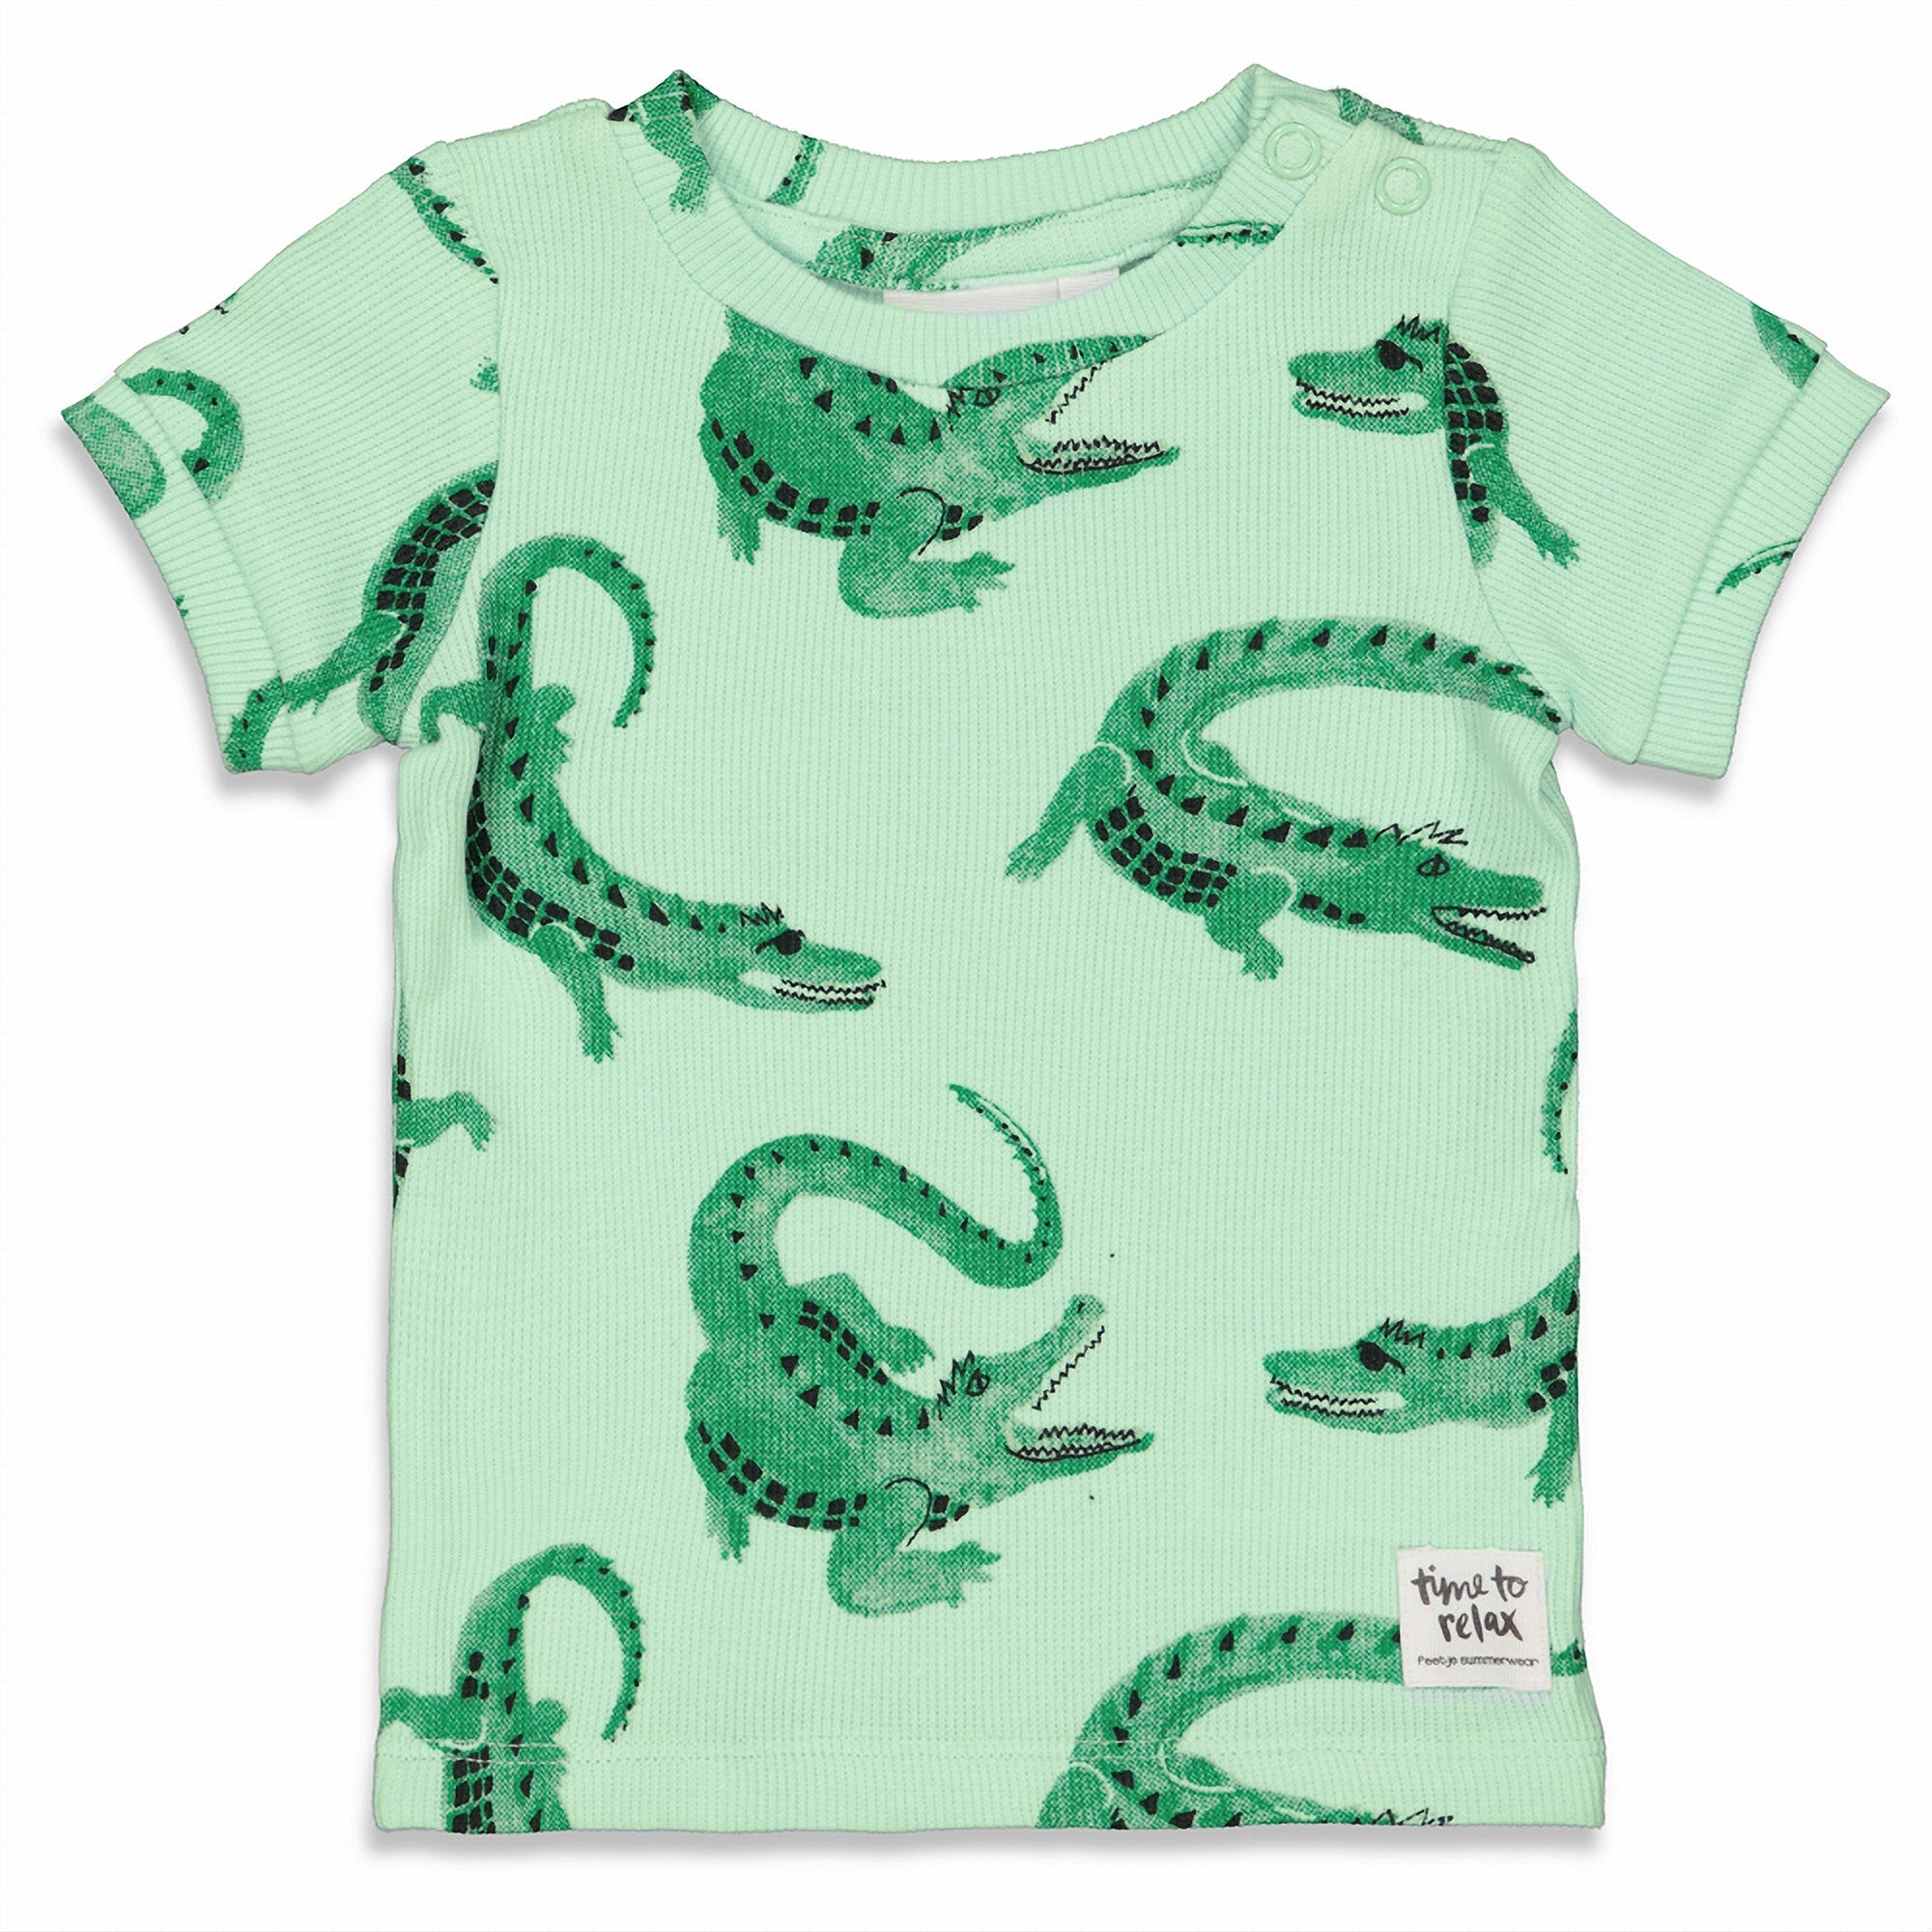 Jongens Chris Croc - Premium Summerwear by FEETJE van Feetje in de kleur Groen in maat 128.